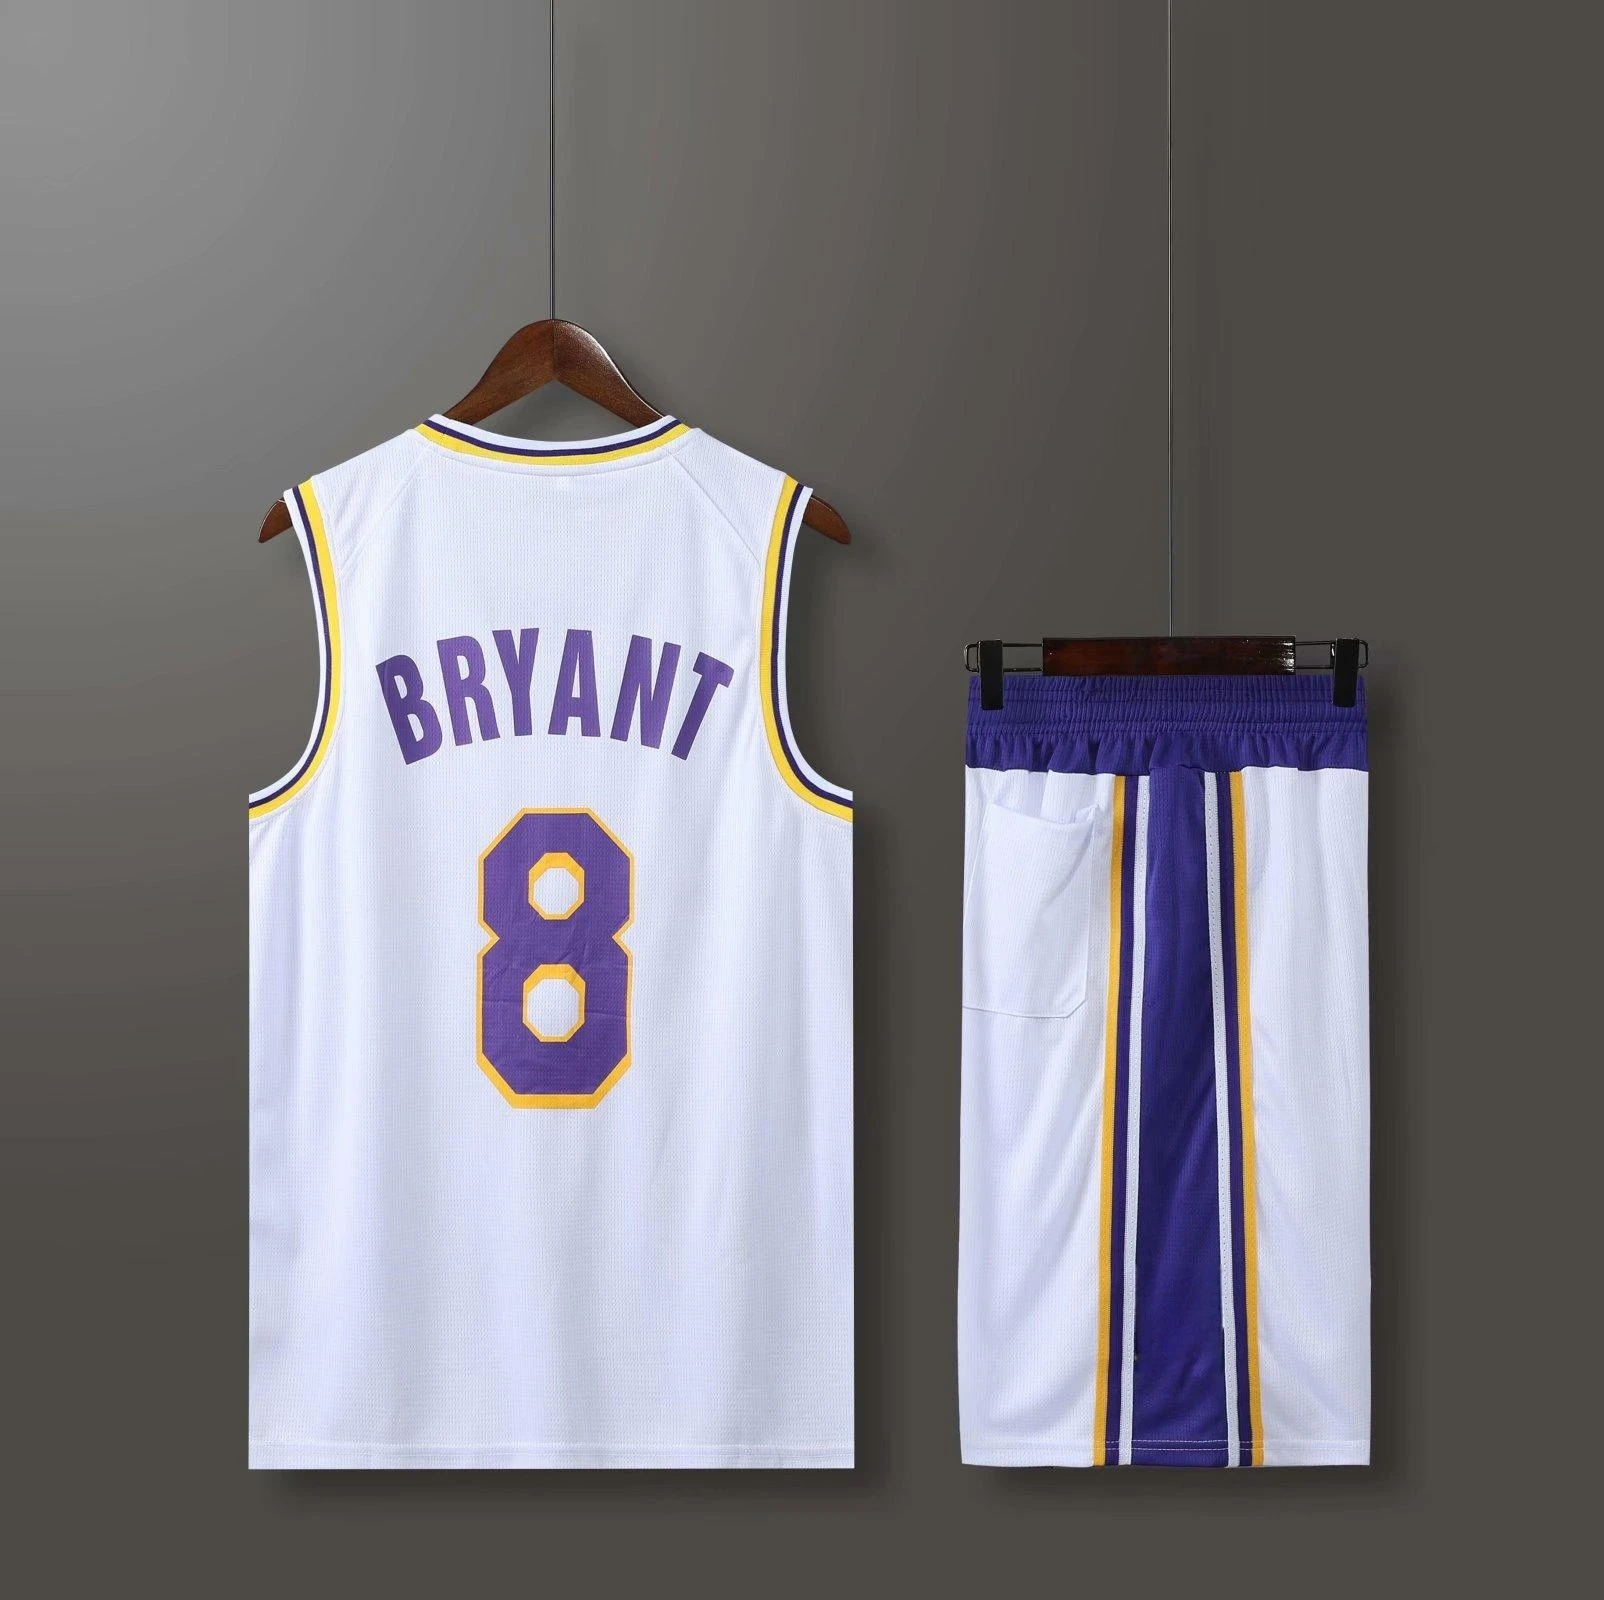 

Высококачественная баскетбольная тренировочная Униформа США, трикотажные изделия унисекс, детская одежда, баскетбольная спортивная одежда с индивидуальным номером